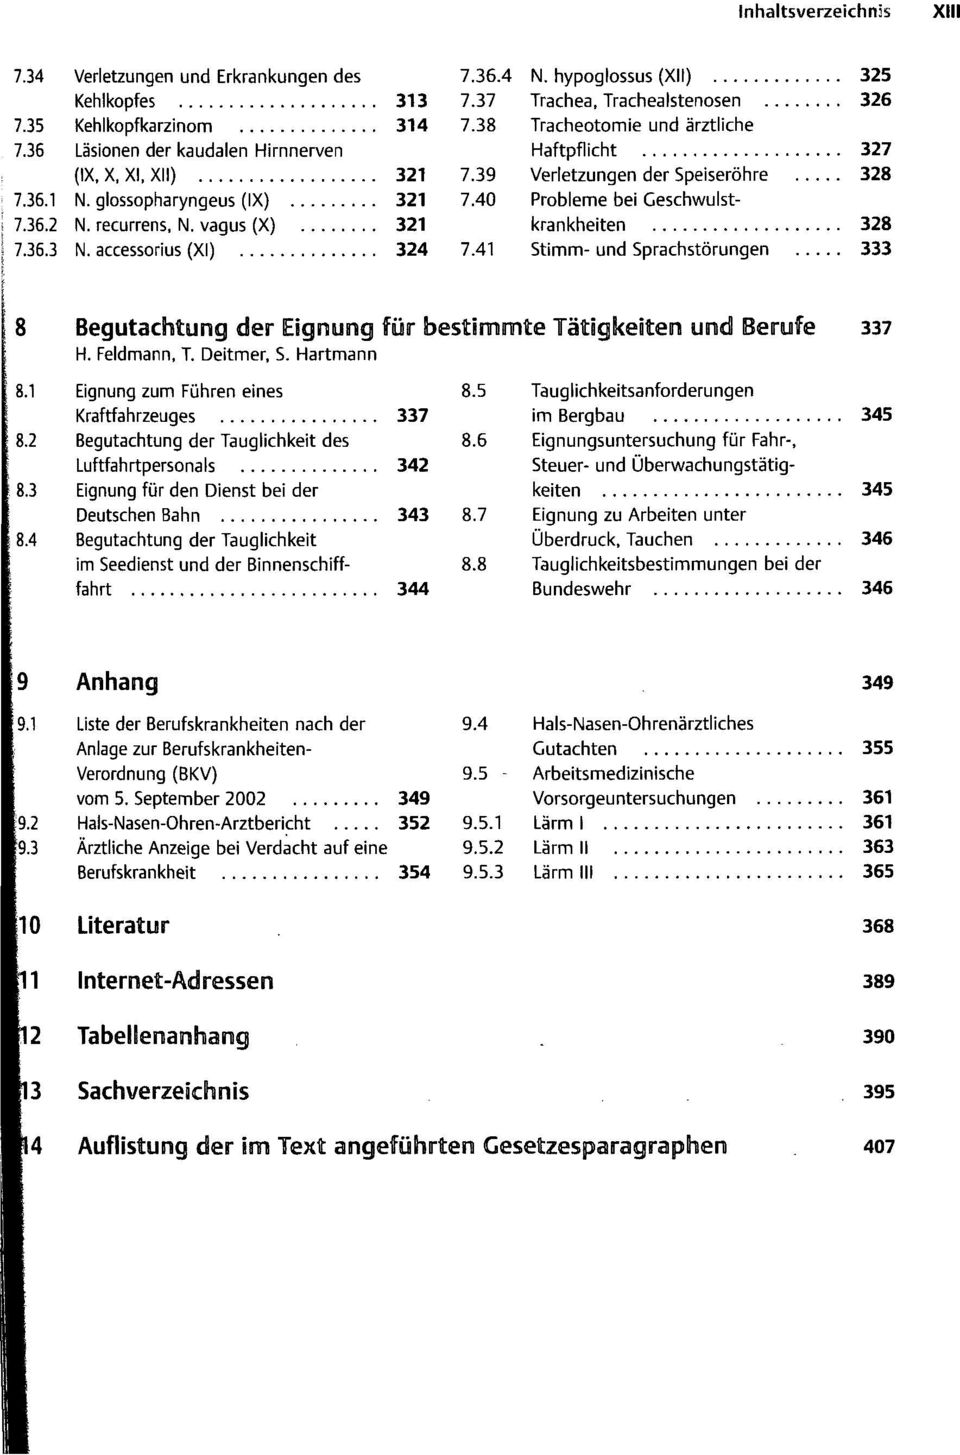 40 Probleme bei Geschwulstkrankheiten 328 7.41 Stimm- und Sprachstörungen 333 Begutachtung der Eignung für bestimmte Tätigkeiten und Berufe H. Feldmann, T. Deitmer, S.